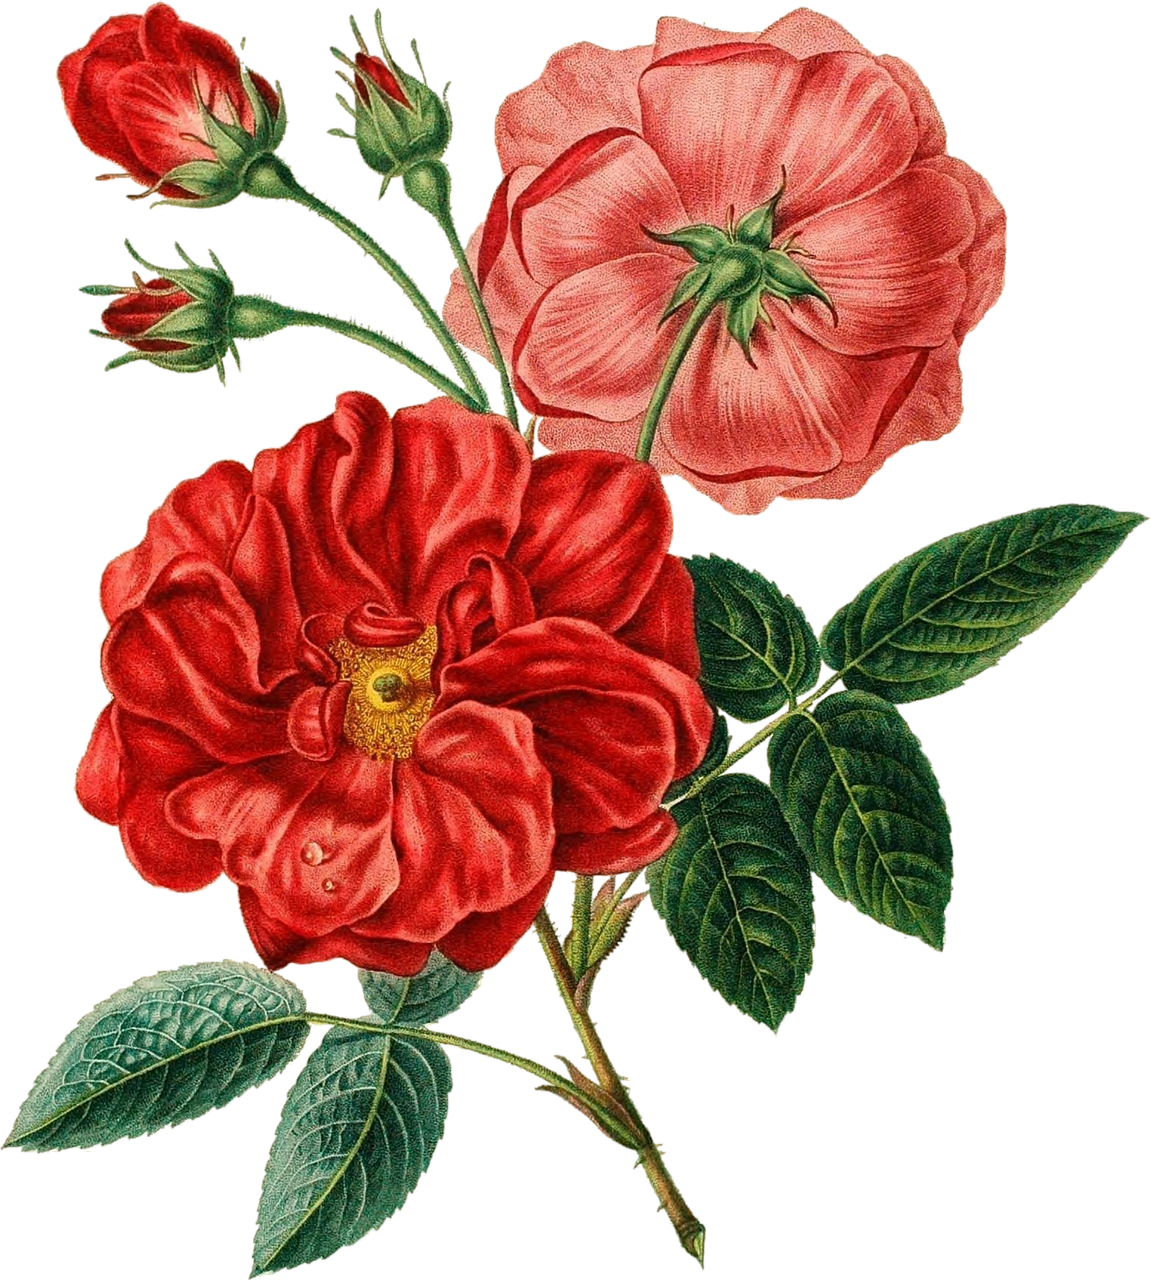 Vintage Red Rose Illustration